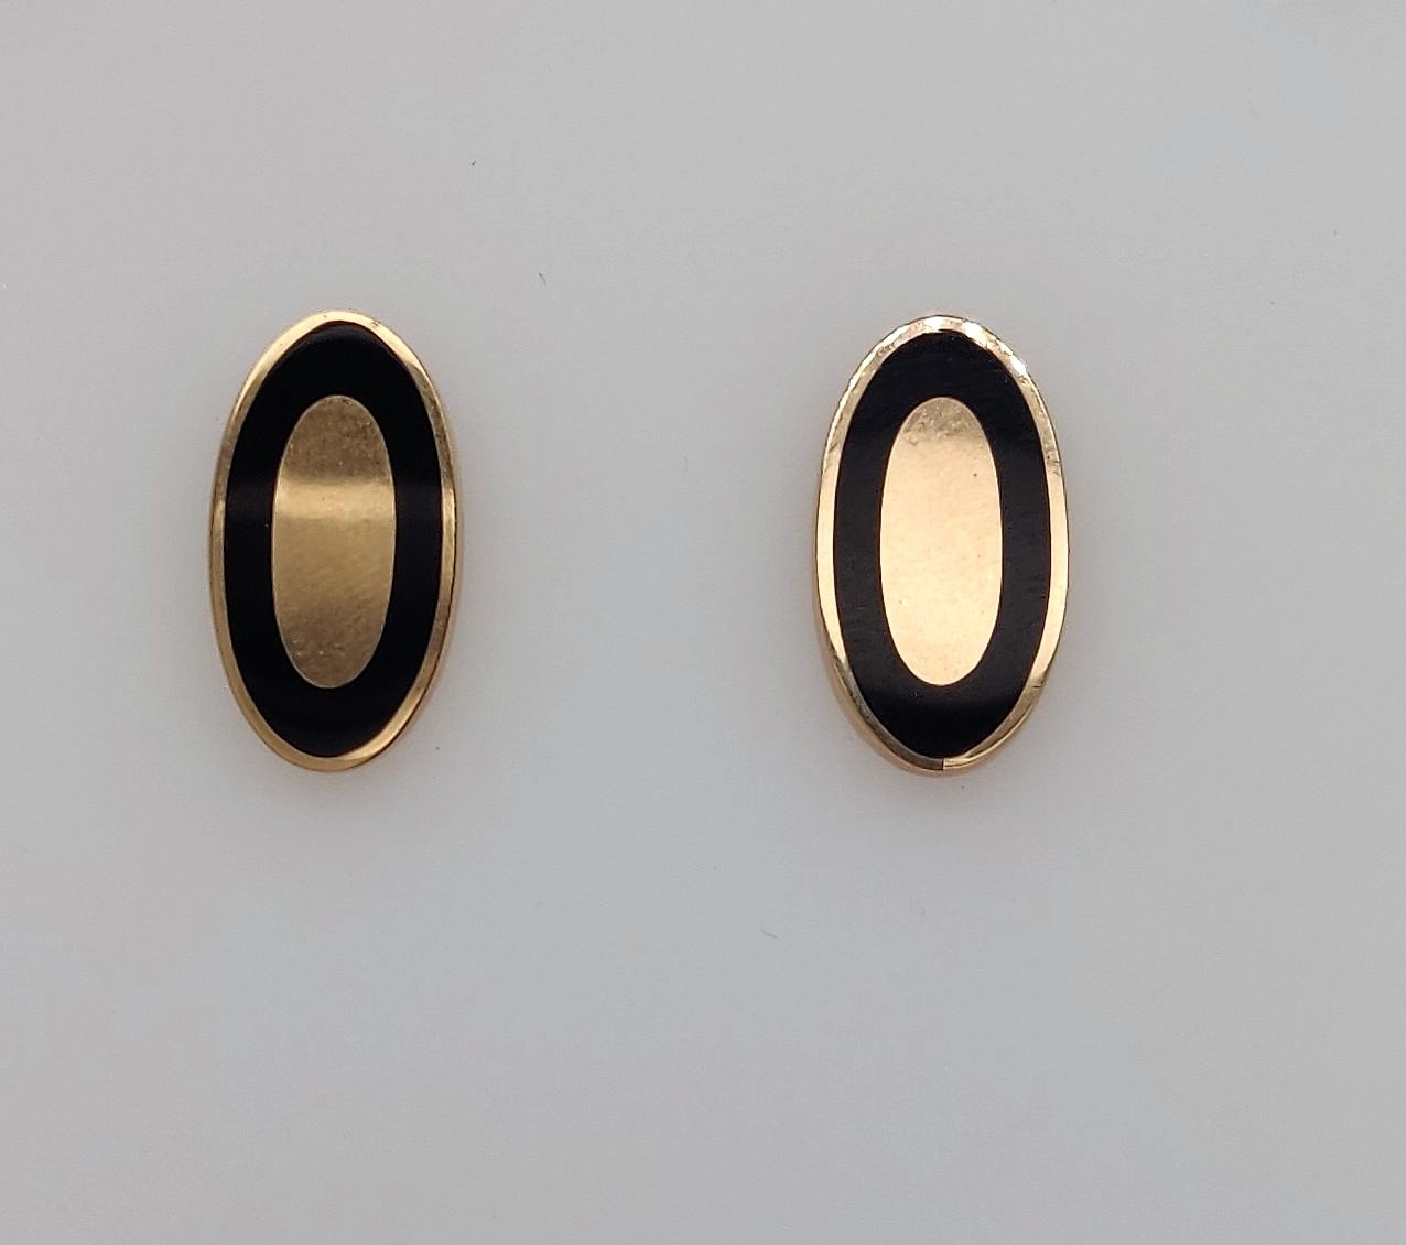 14K Yellow Gold Oval Stud Earrings with Black Enamel